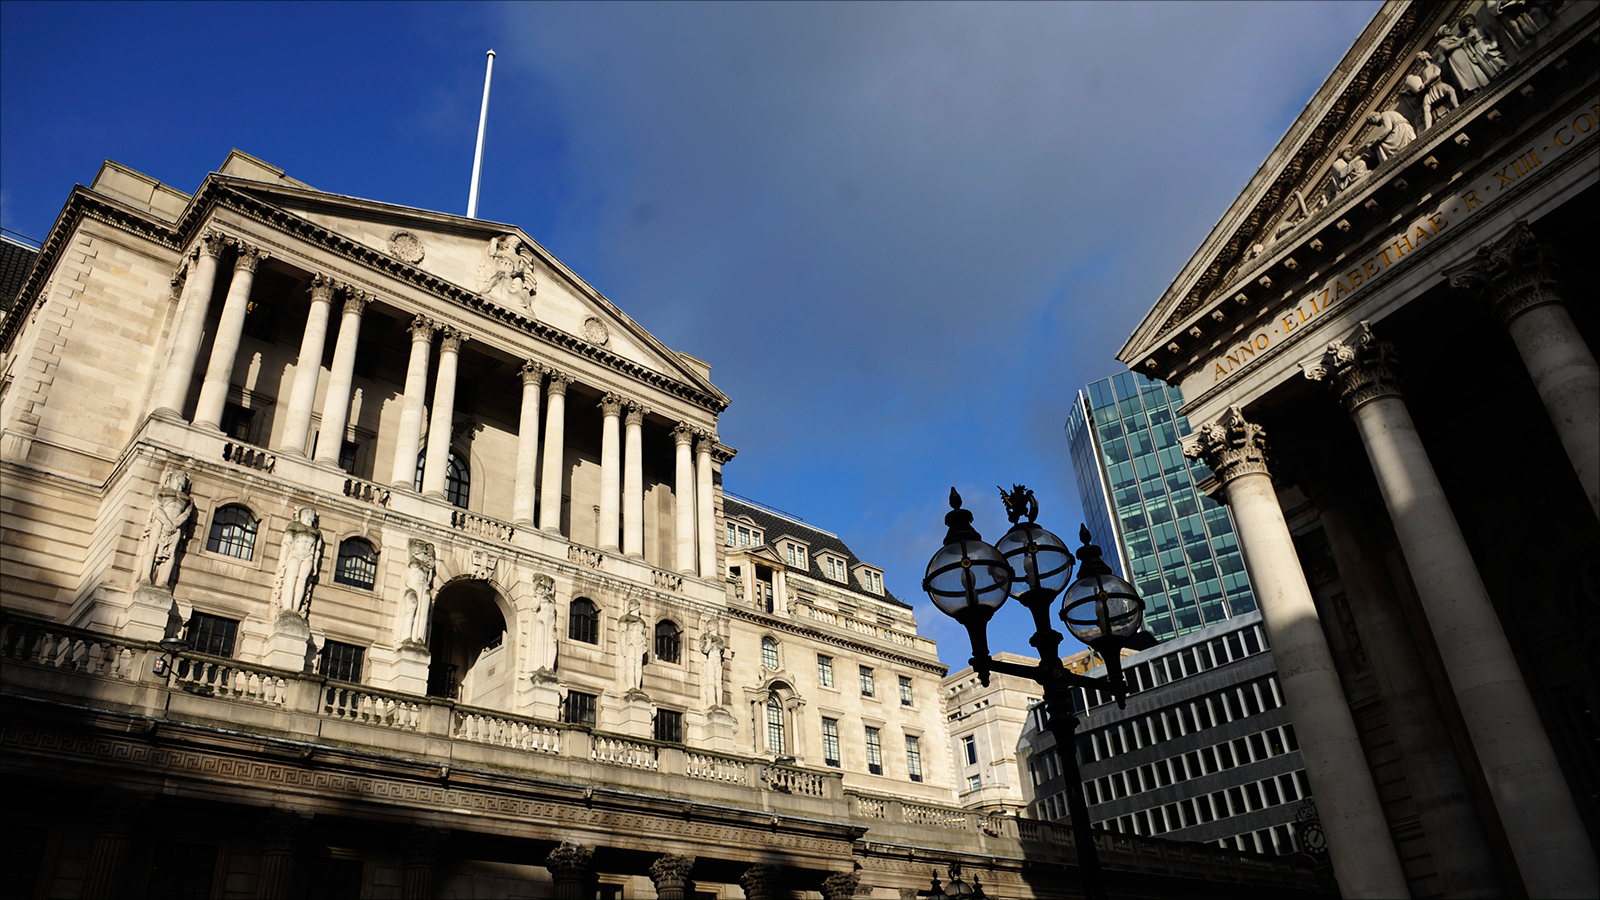 ‪توقعات بأن البنك المركزي البريطاني سيعجّل من قرار خفض سعر الفائدة نهاية الشهر الجاري‬ (الأوروبية)